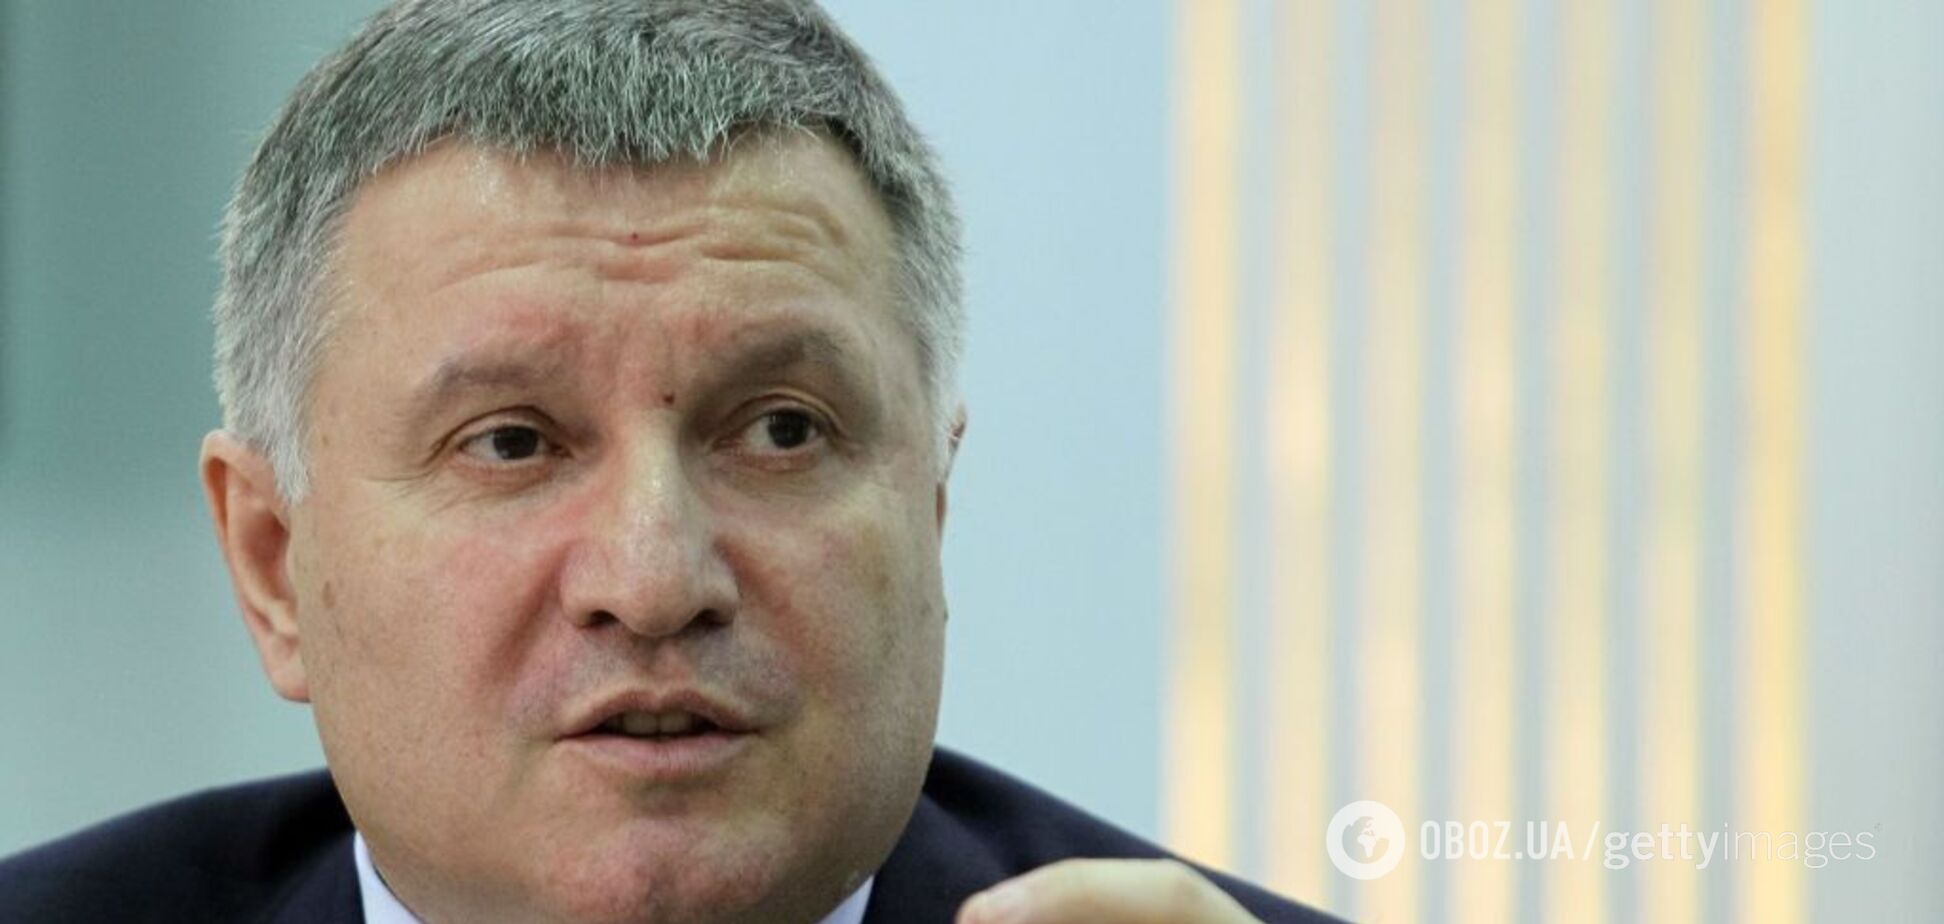 Дебаты на стадионе: Аваков предупредил об угрозе для Украины